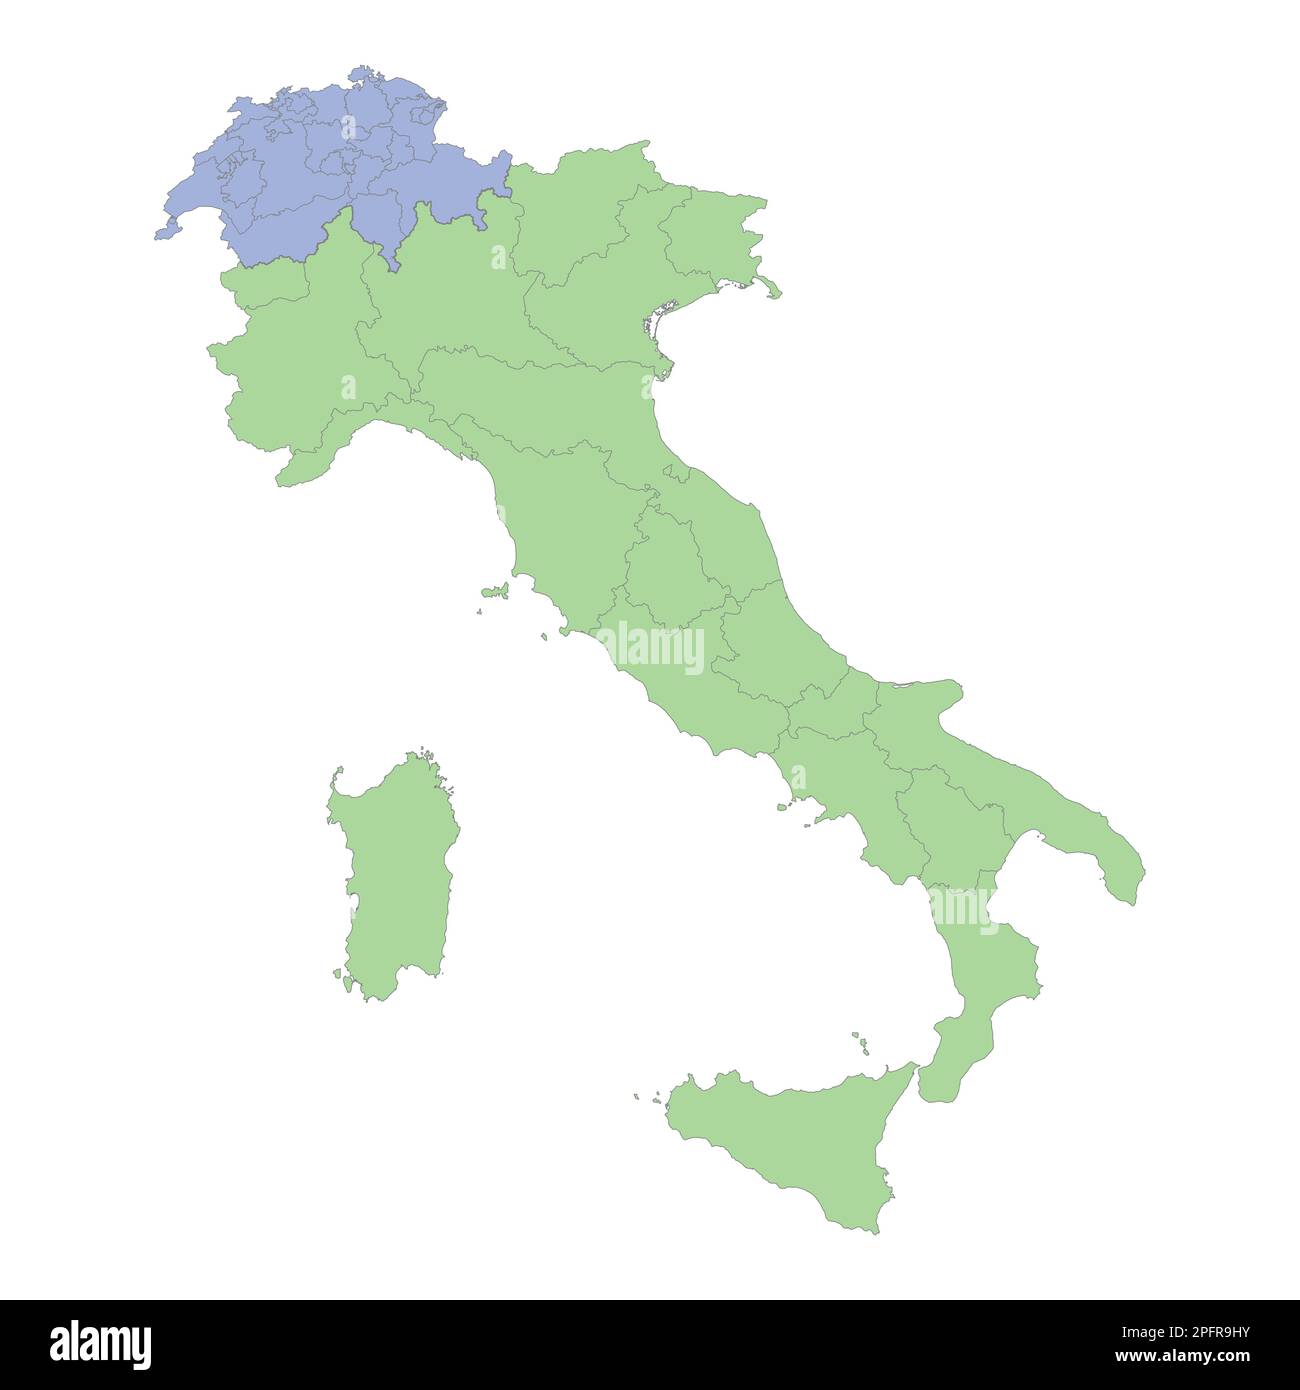 Mappa politica di alta qualità dell'Italia e della Svizzera con confini delle regioni o province. Illustrazione vettoriale Illustrazione Vettoriale